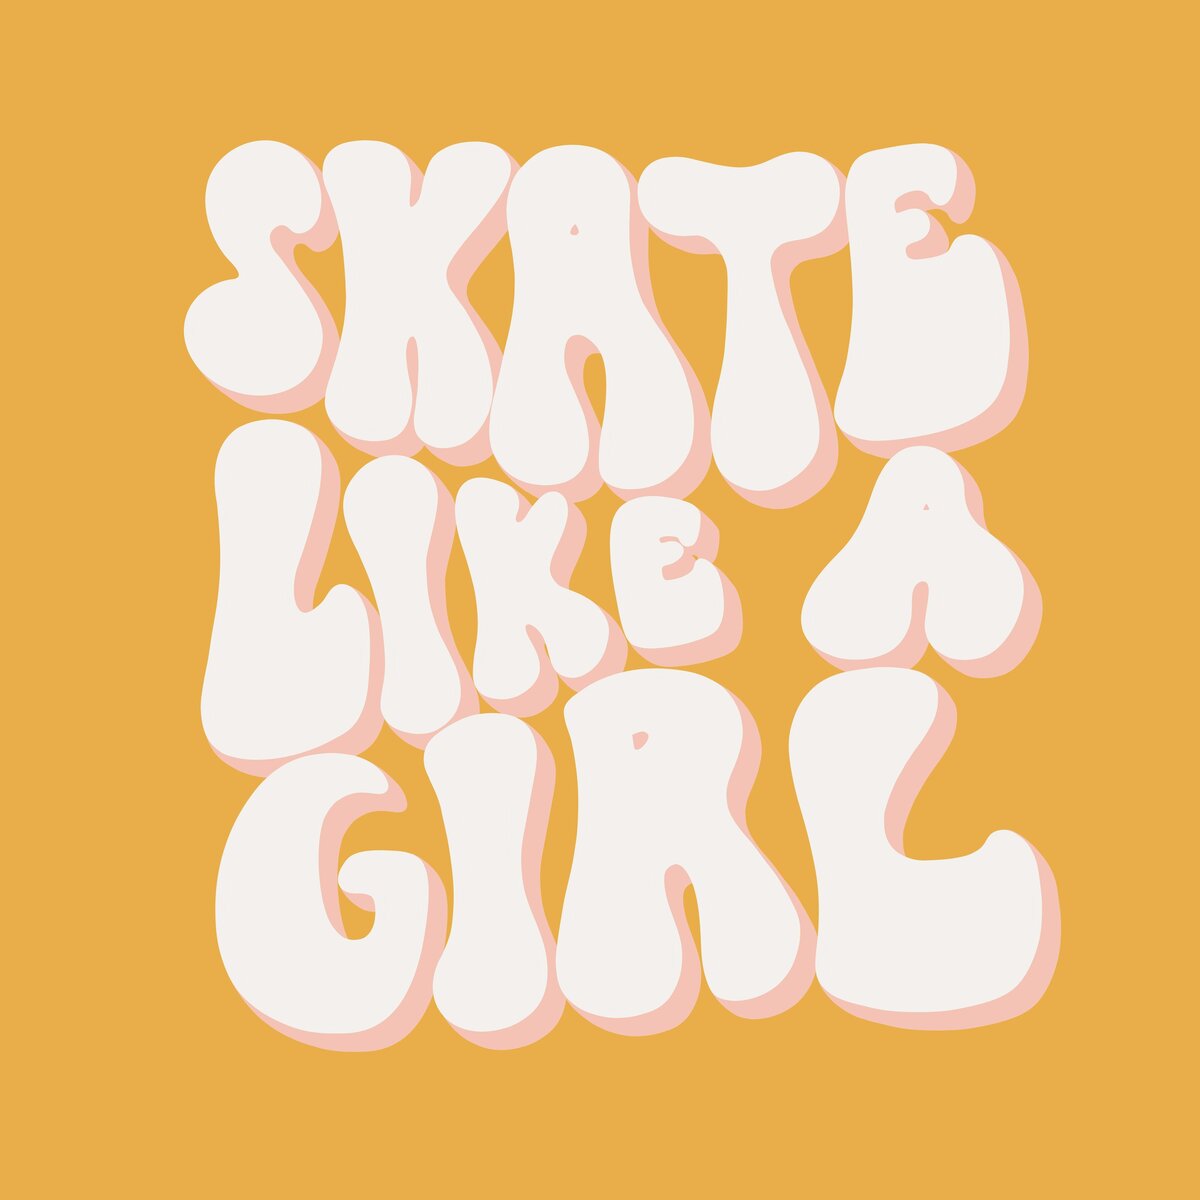 Skate_Like_A_Girl